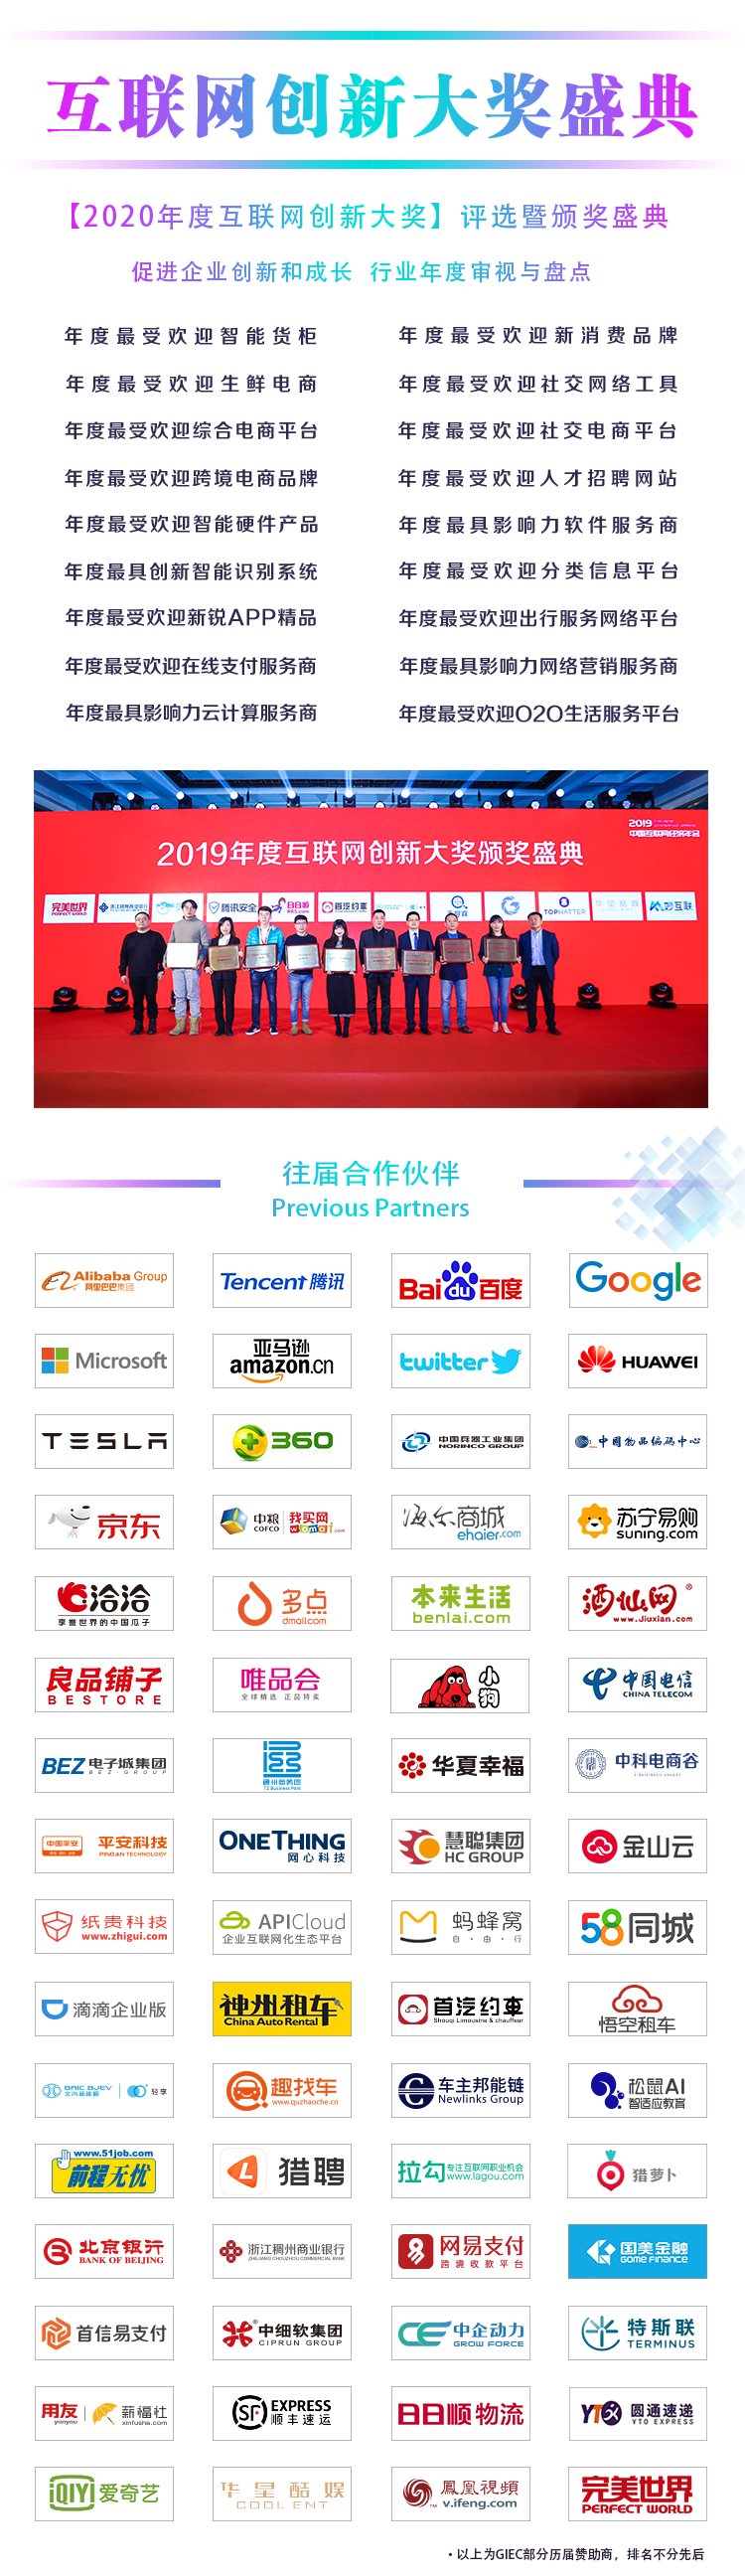 2020中国互联网经济年会3.png